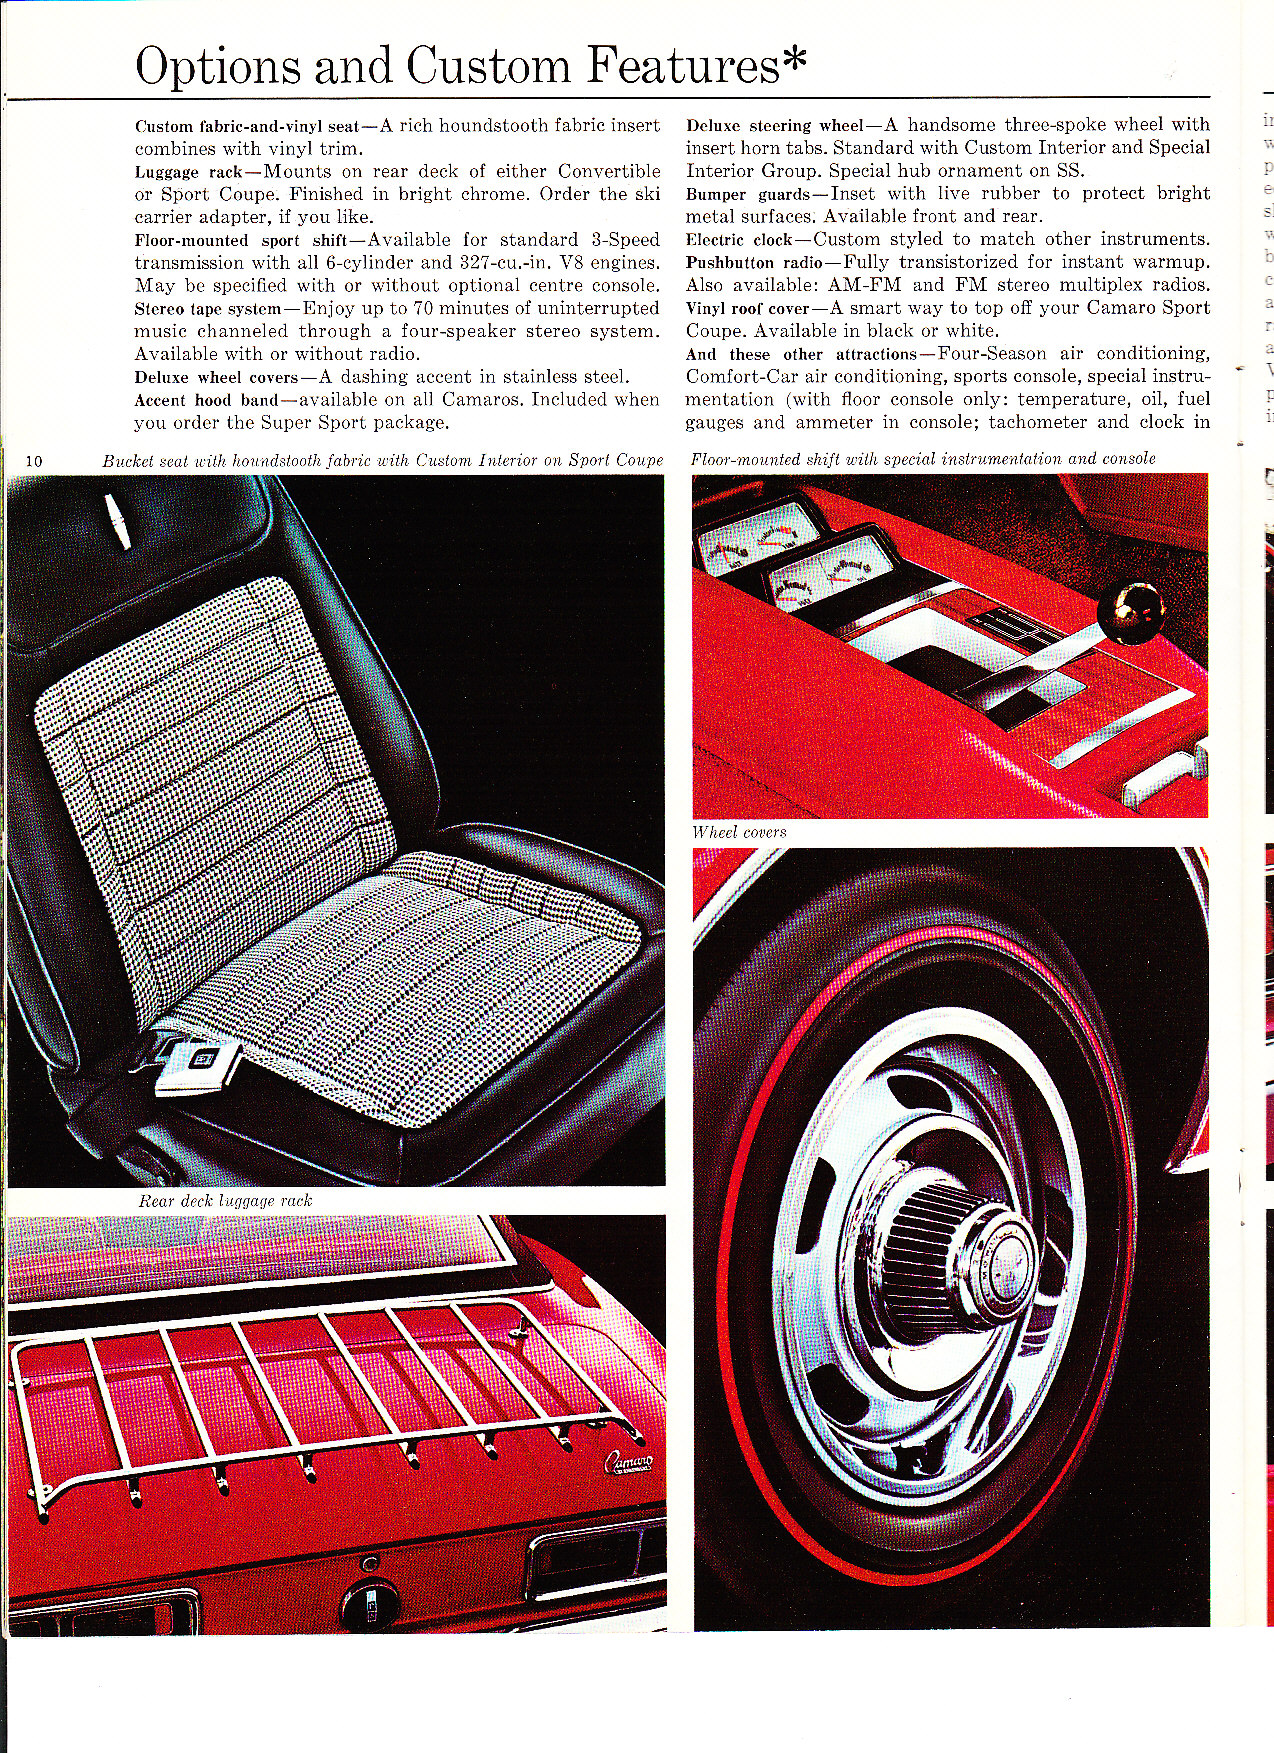 1968 Chev Camaro Brochure Page 6